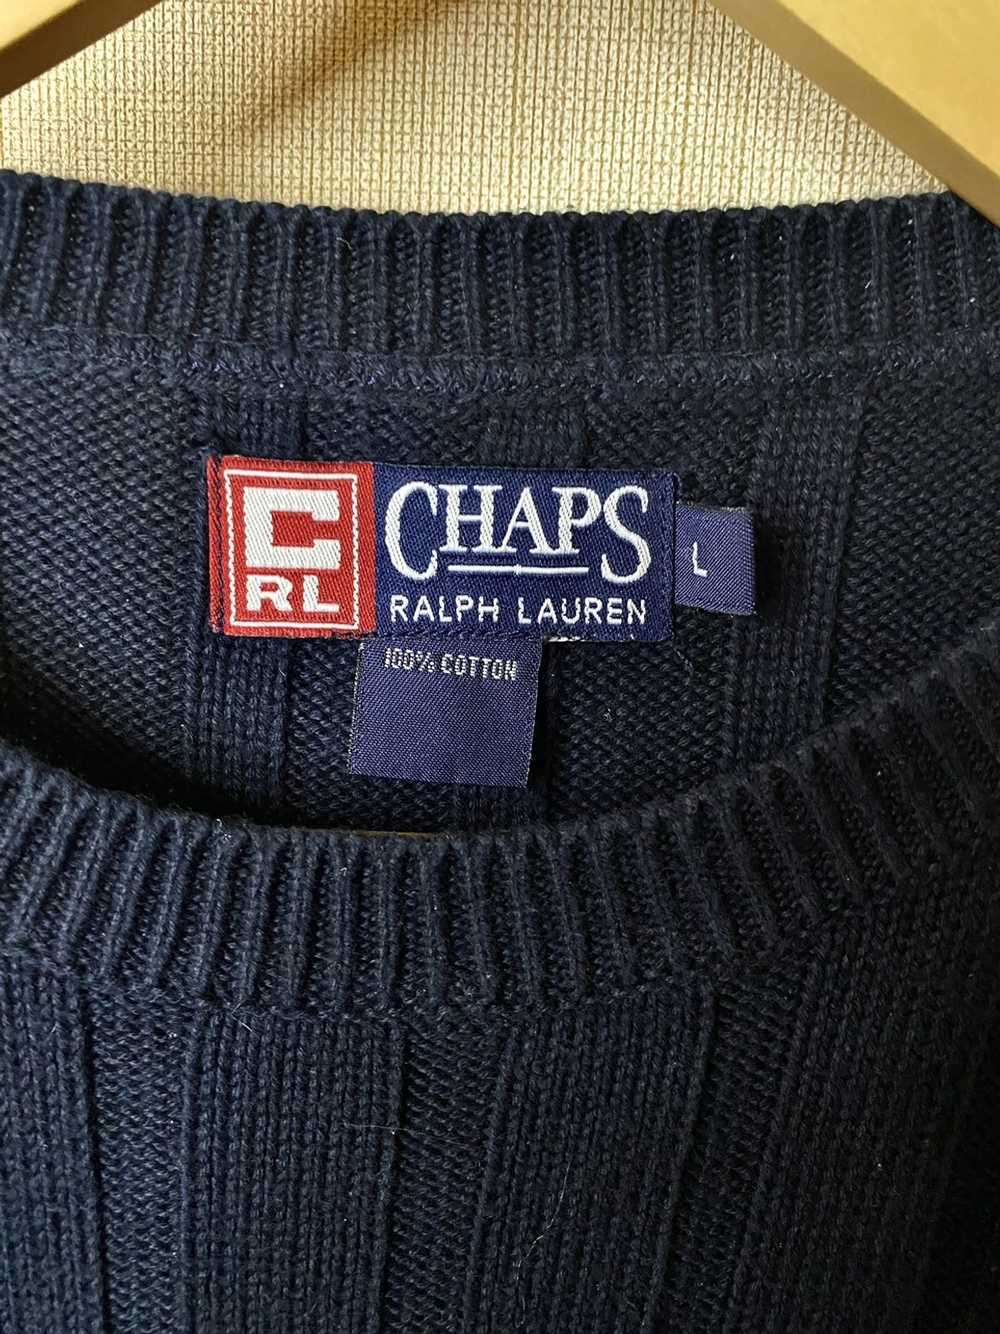 Chaps Ralph Lauren Chaps Ralph Lauren sweatshirt - image 3